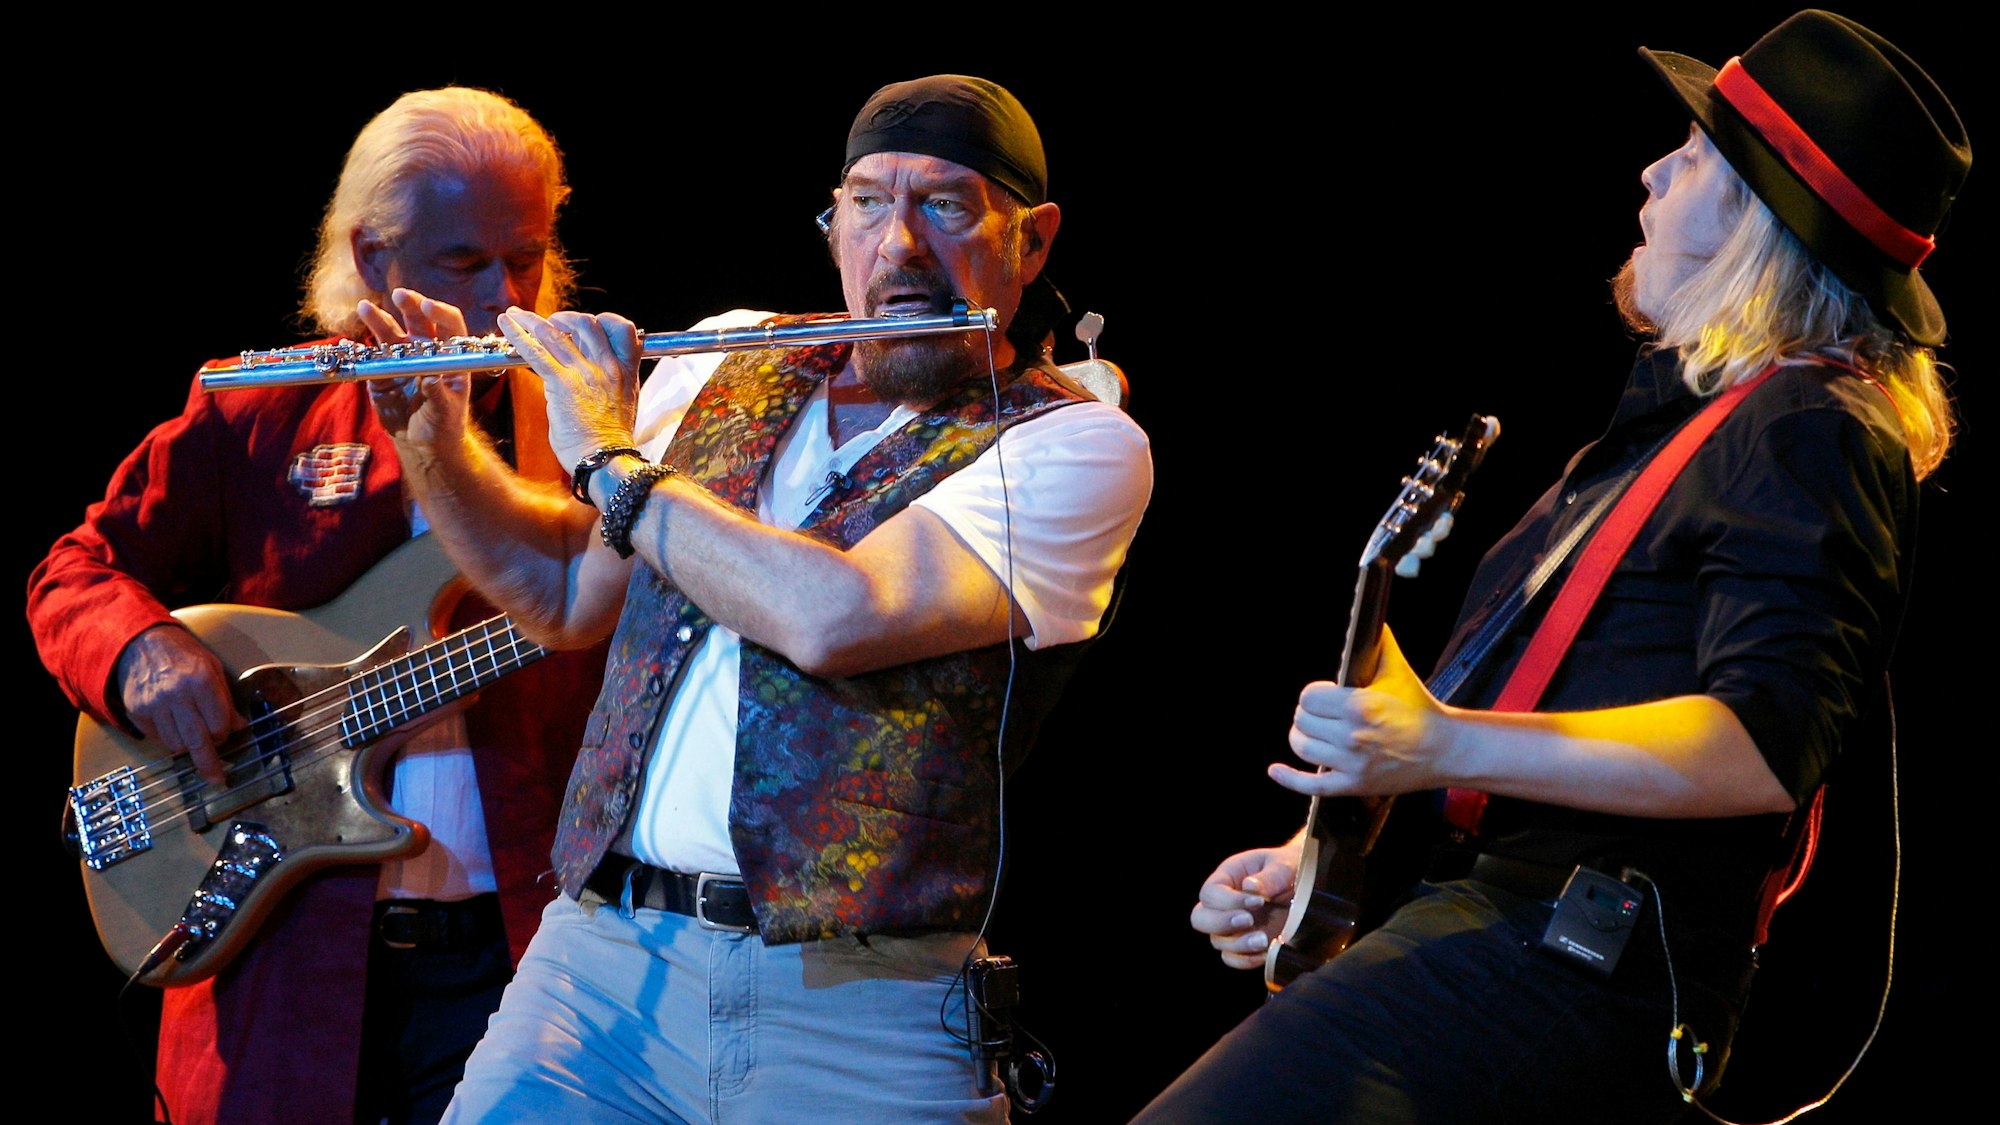 Die Band Jethro Tull bei einem Auftritt auf der Bühne.